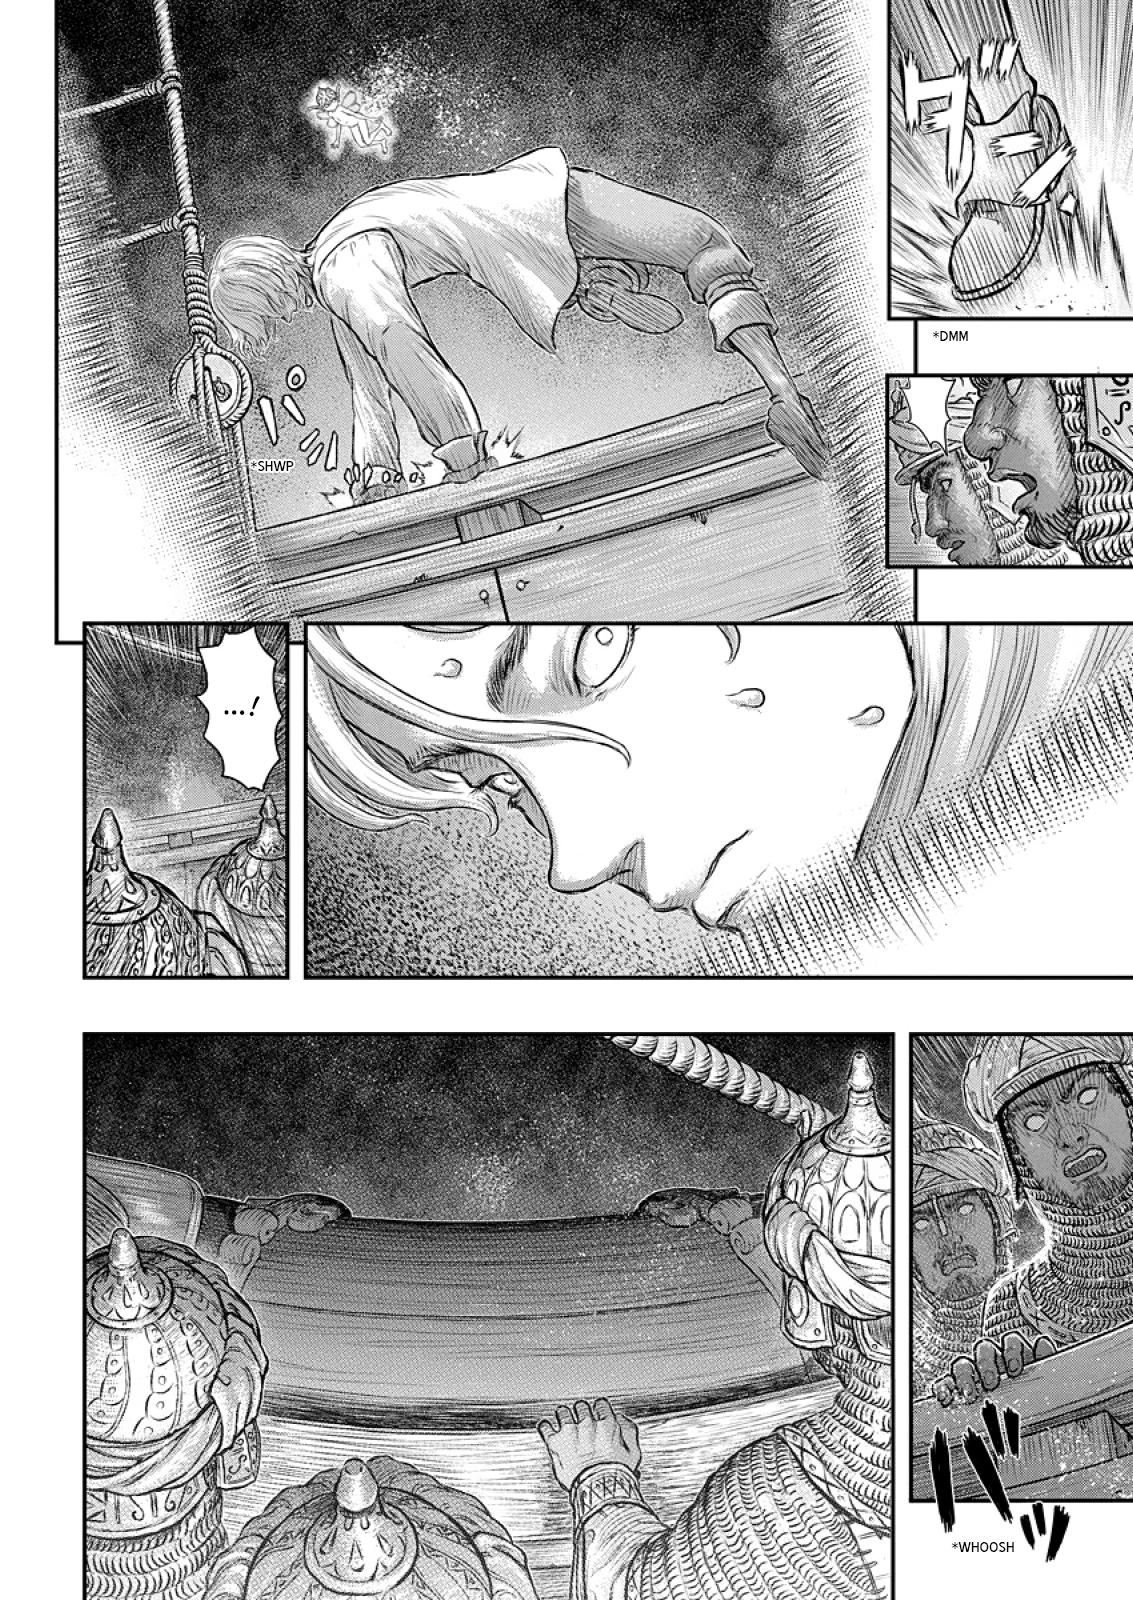 Berserk Manga Chapter 374 image 07